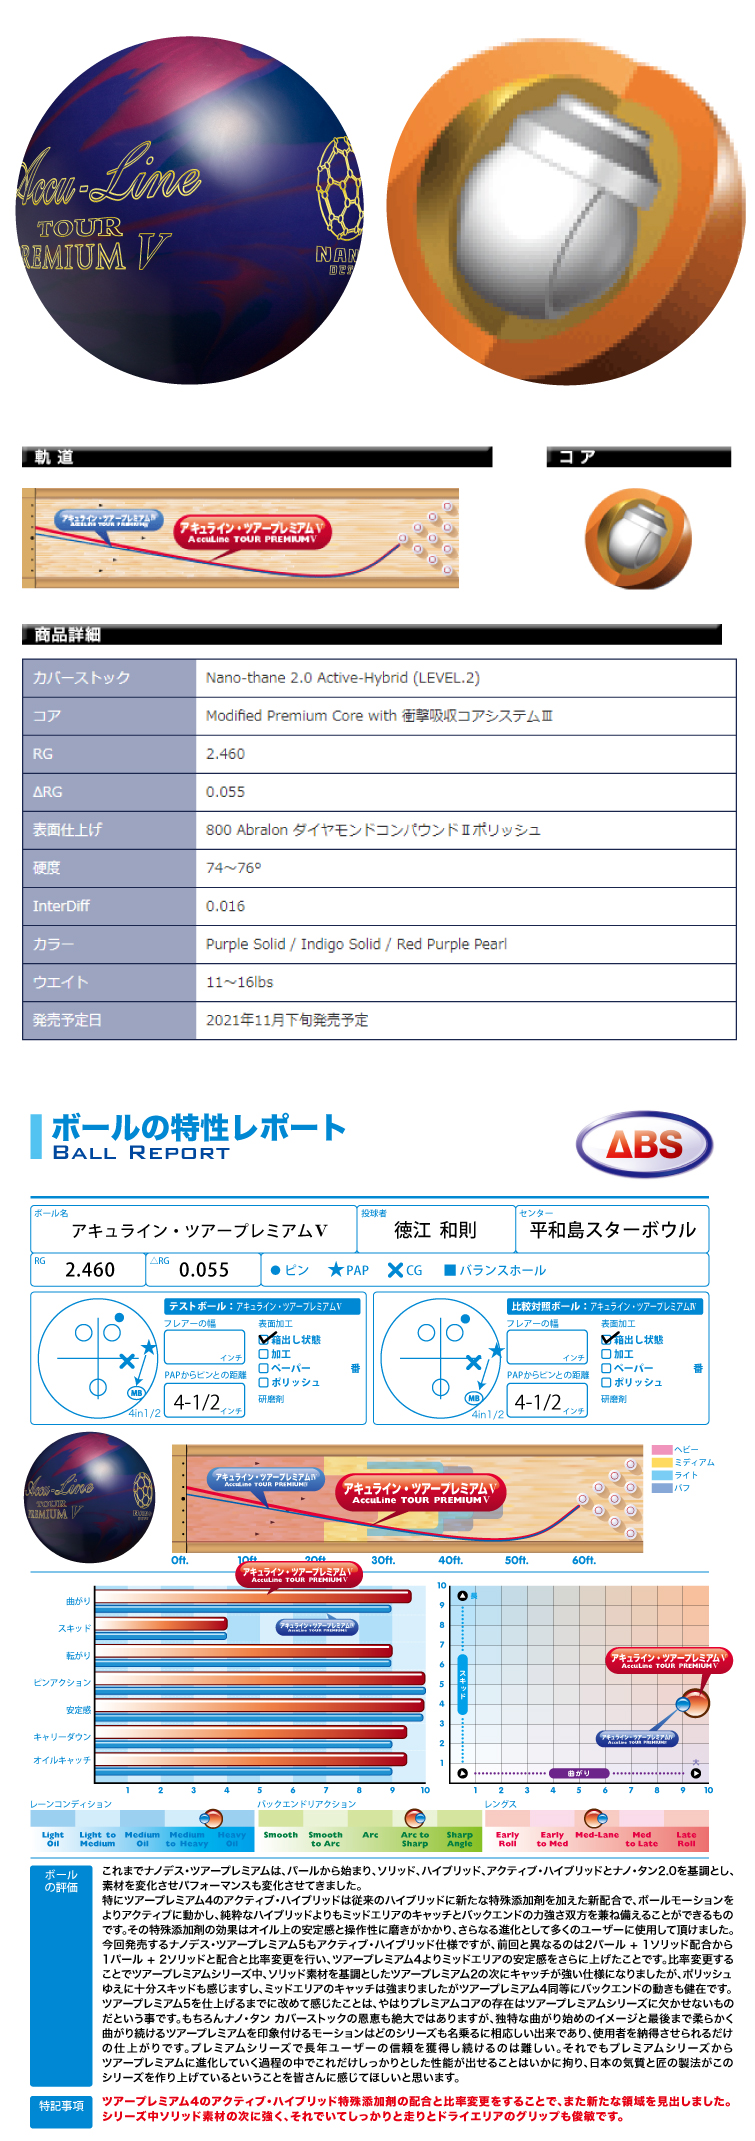 ボウリングボール ABS NANODESU アキュラインツアープレミアムファイブ Accu Line TOUR PREMIUM Ⅴ ボール  フタバプロショップオンライン